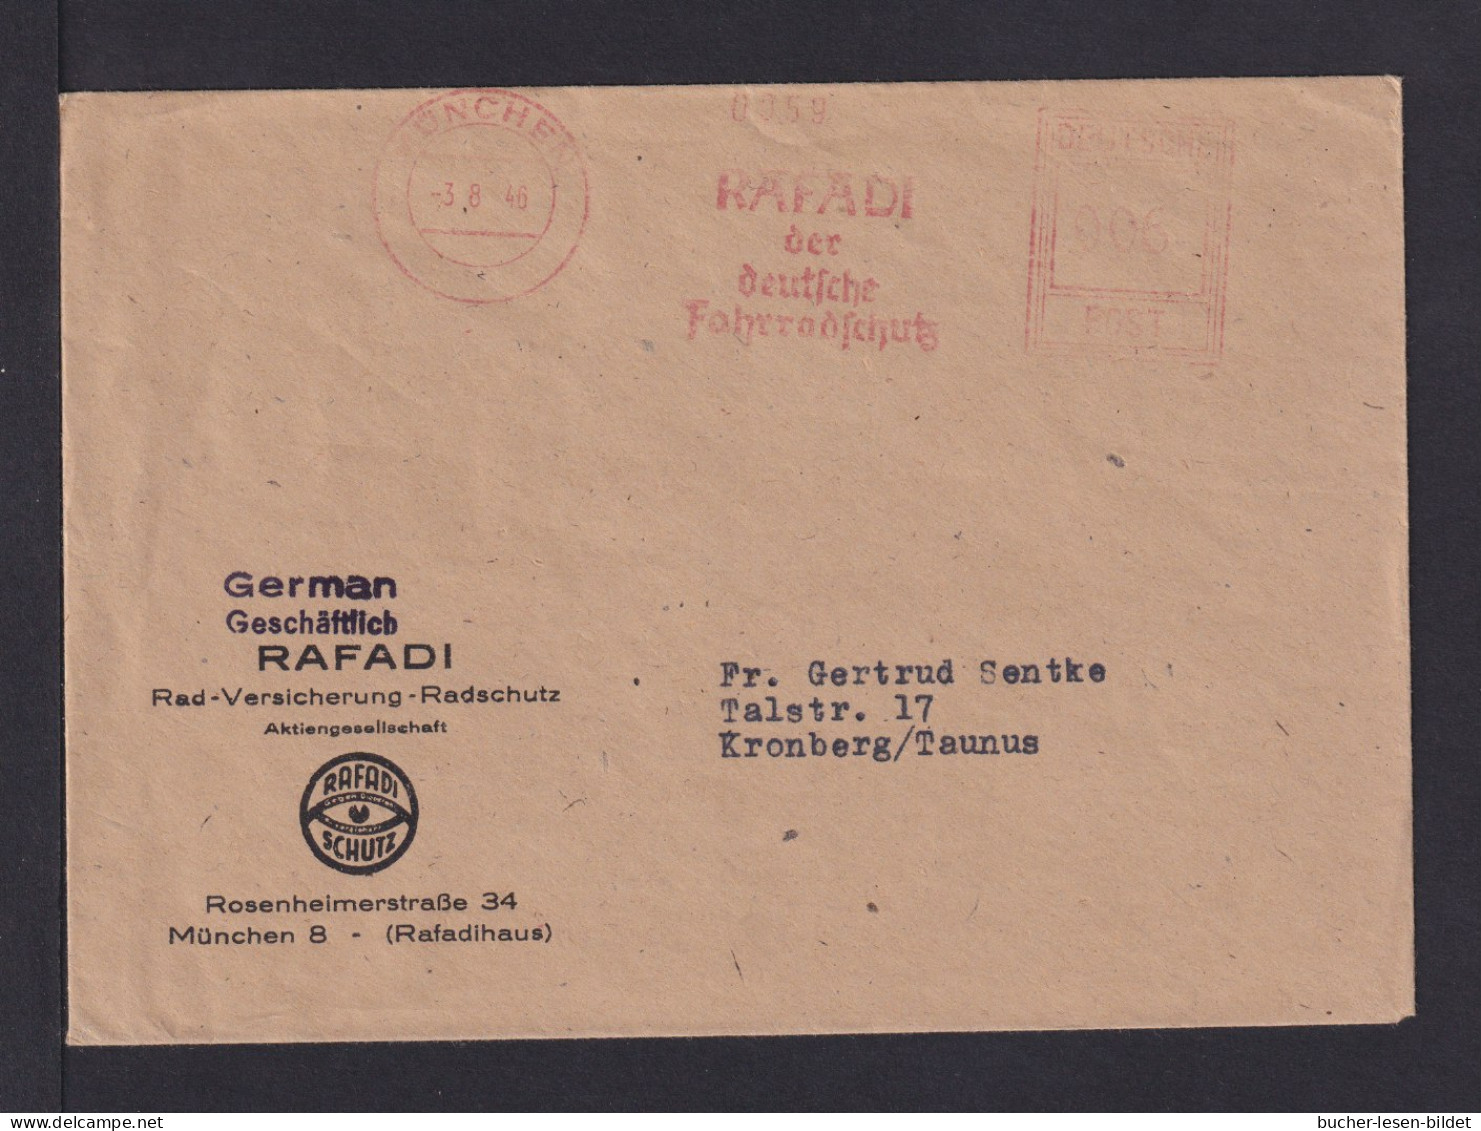 1946 - Freistempel München "Rafadi.. Der Deutsche Fahrradschutz" - Brief - Radsport